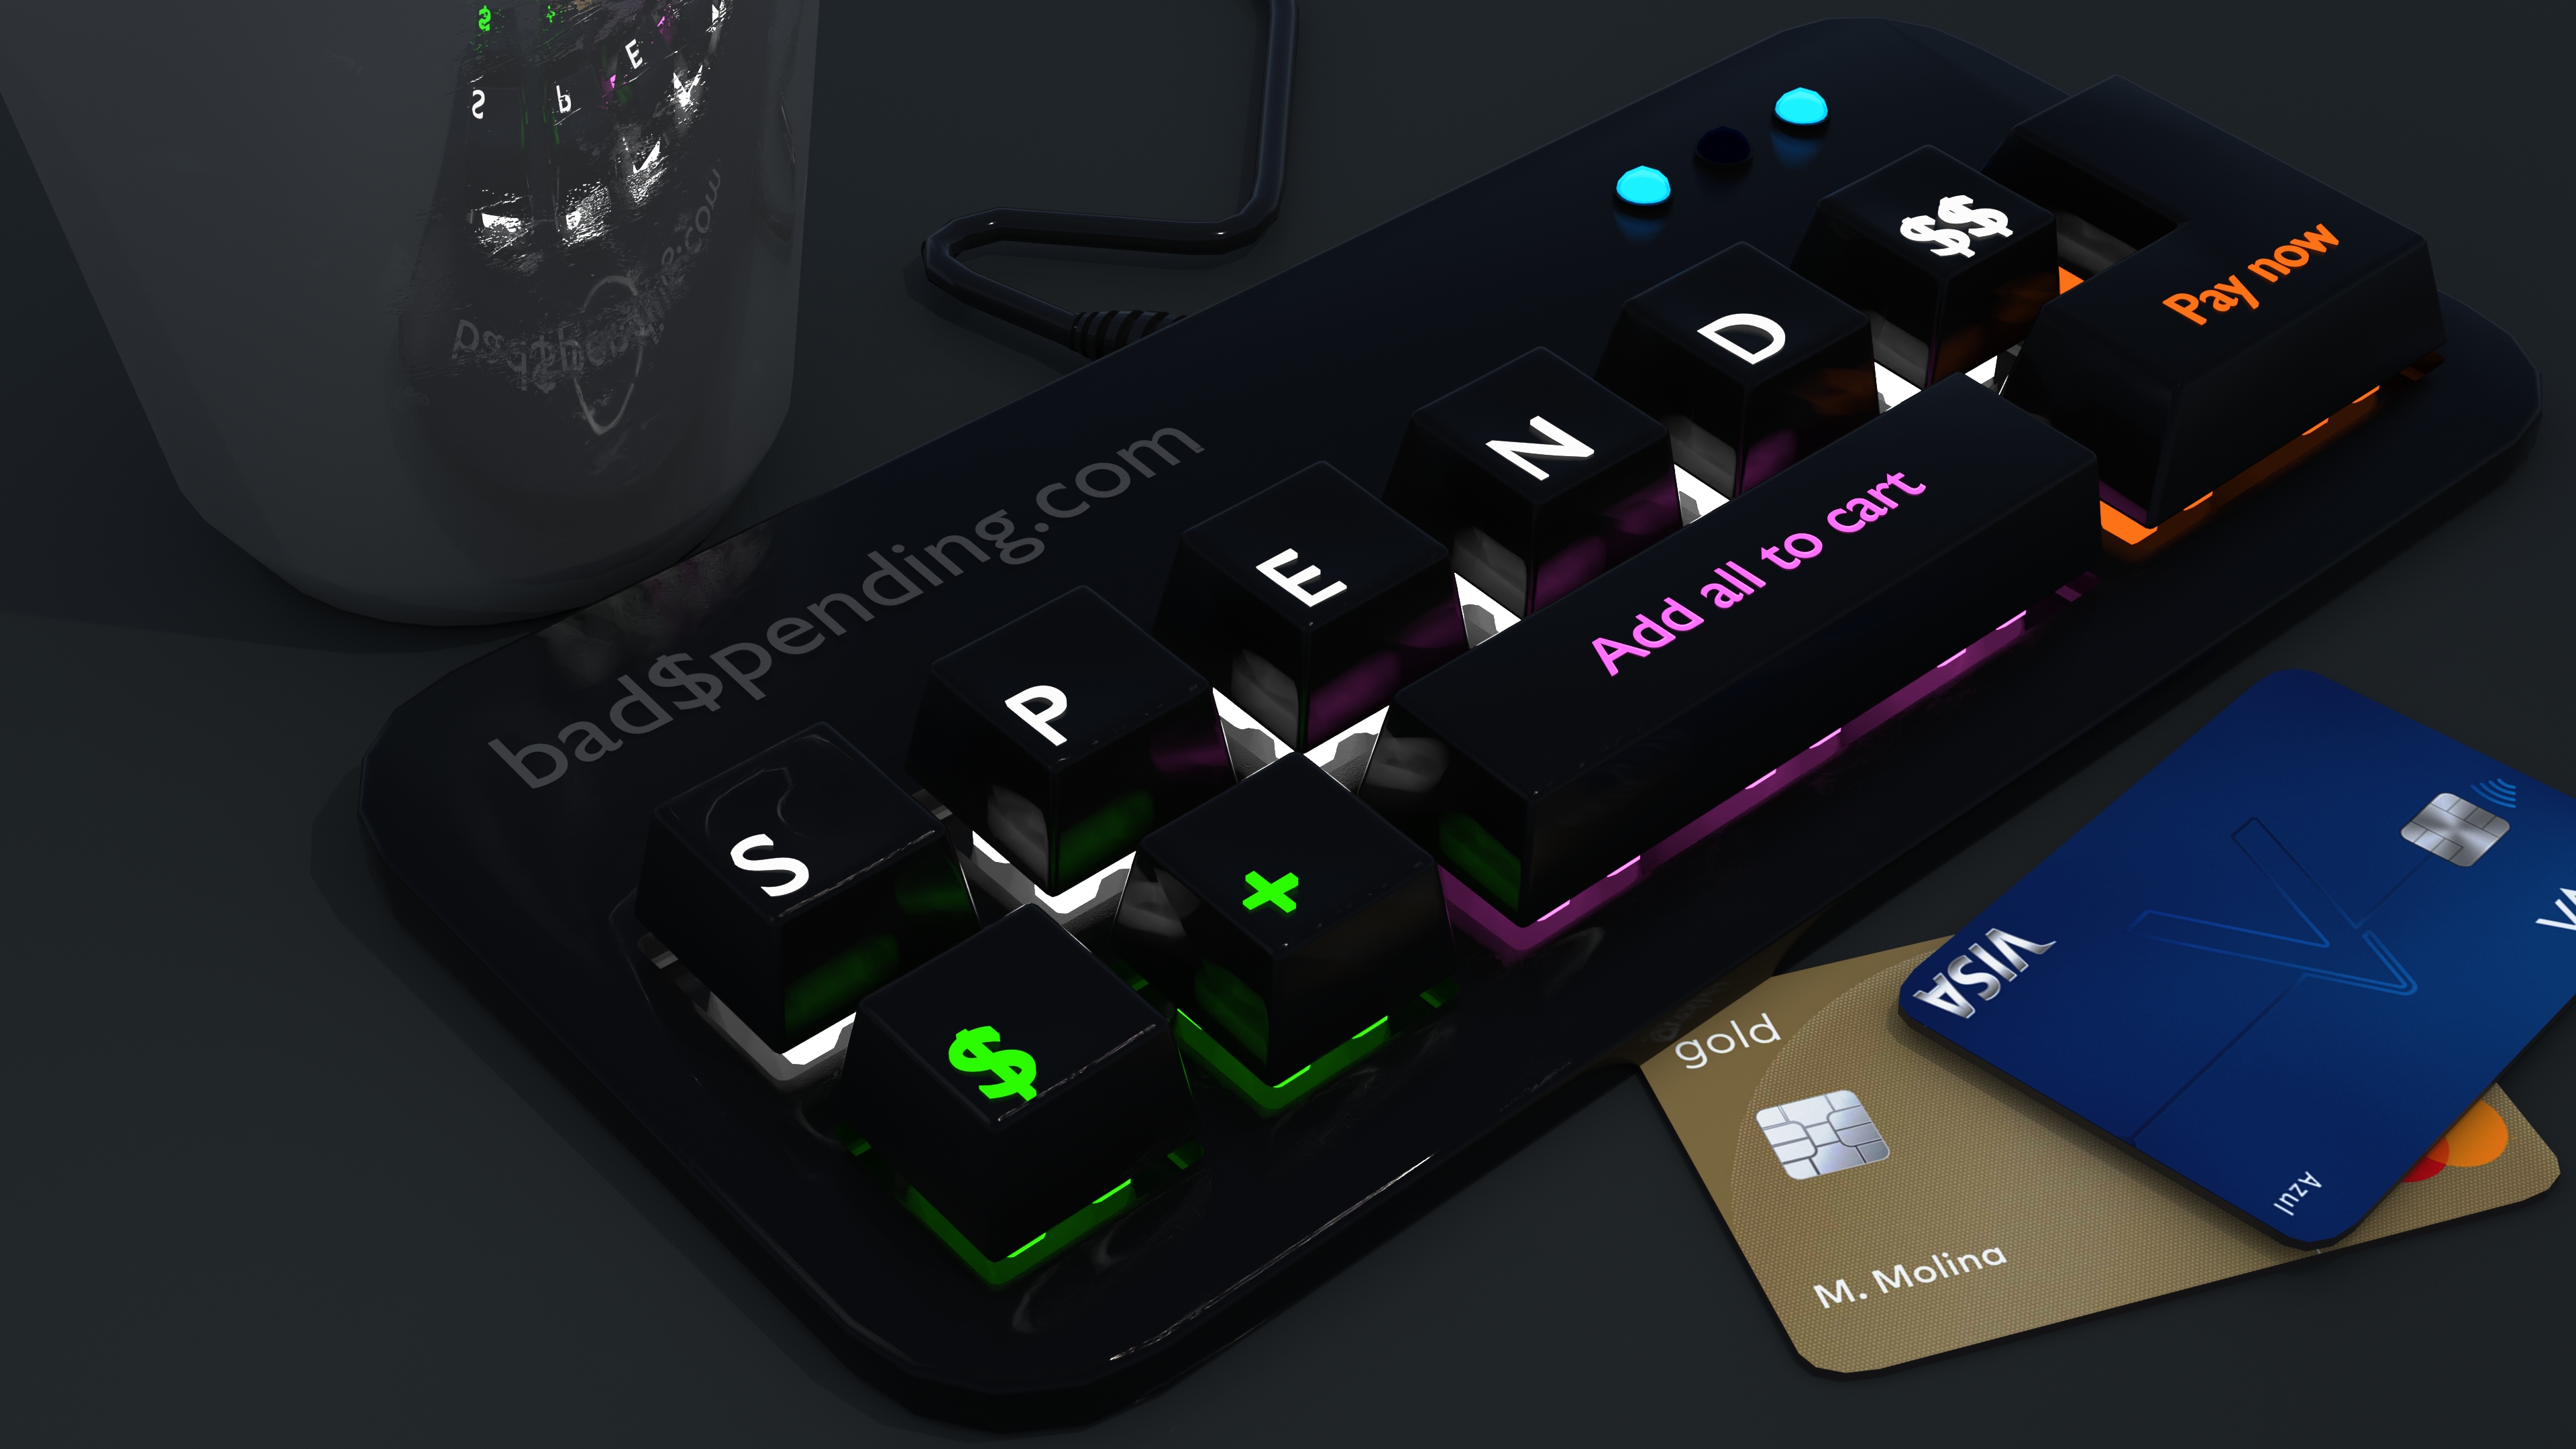 Blender Digital Computer Mexico Render Credit Cards Keyboards Concept Art 3840x2160